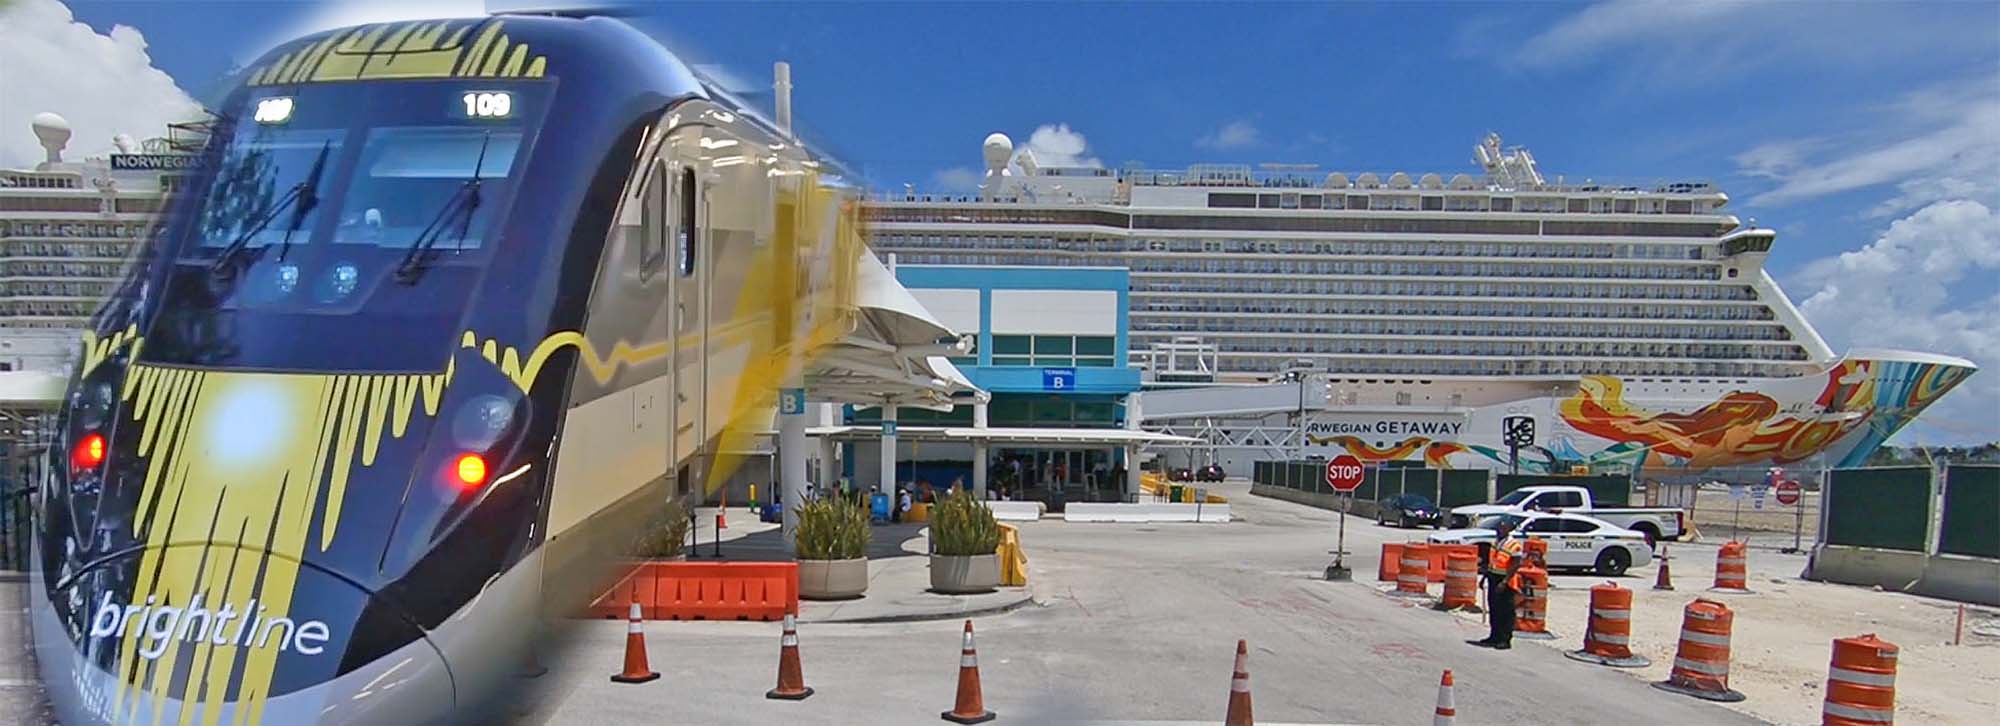 Brightline Train to Port of Miami